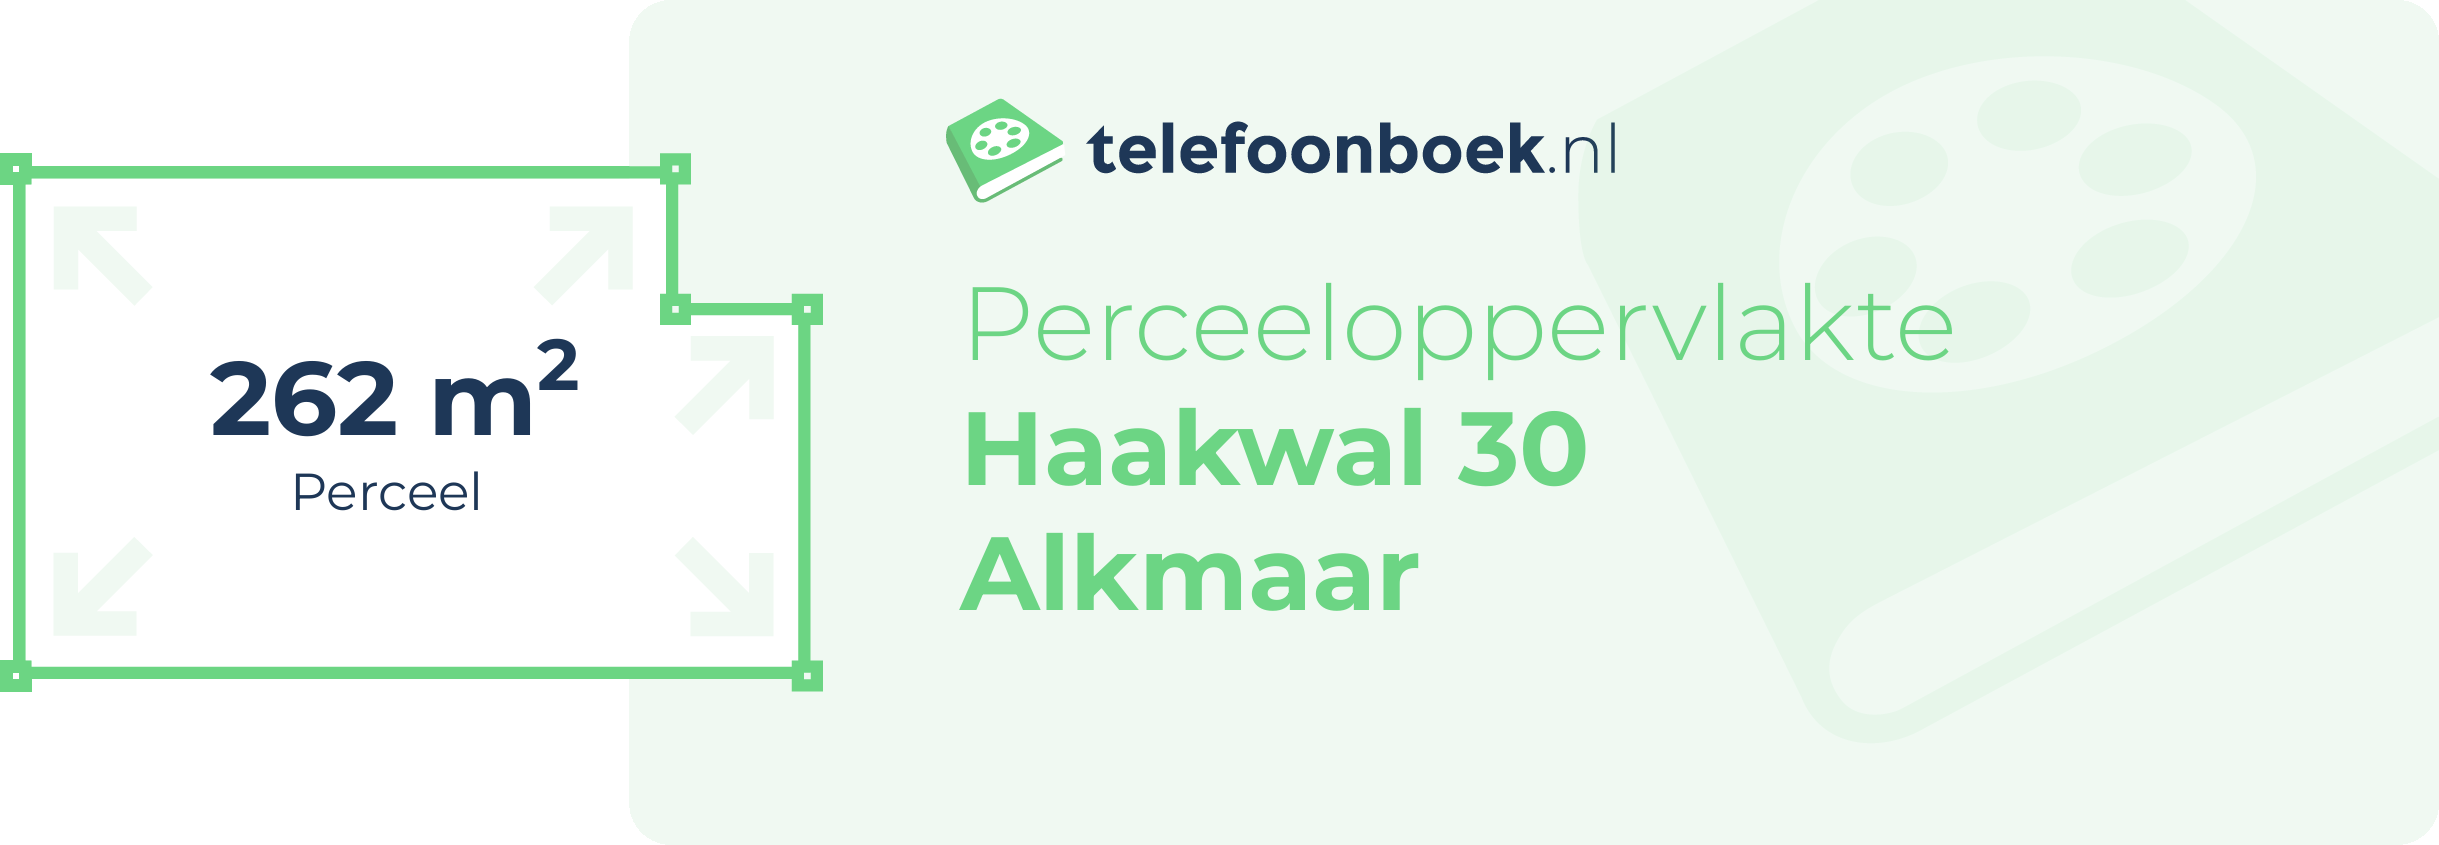 Perceeloppervlakte Haakwal 30 Alkmaar